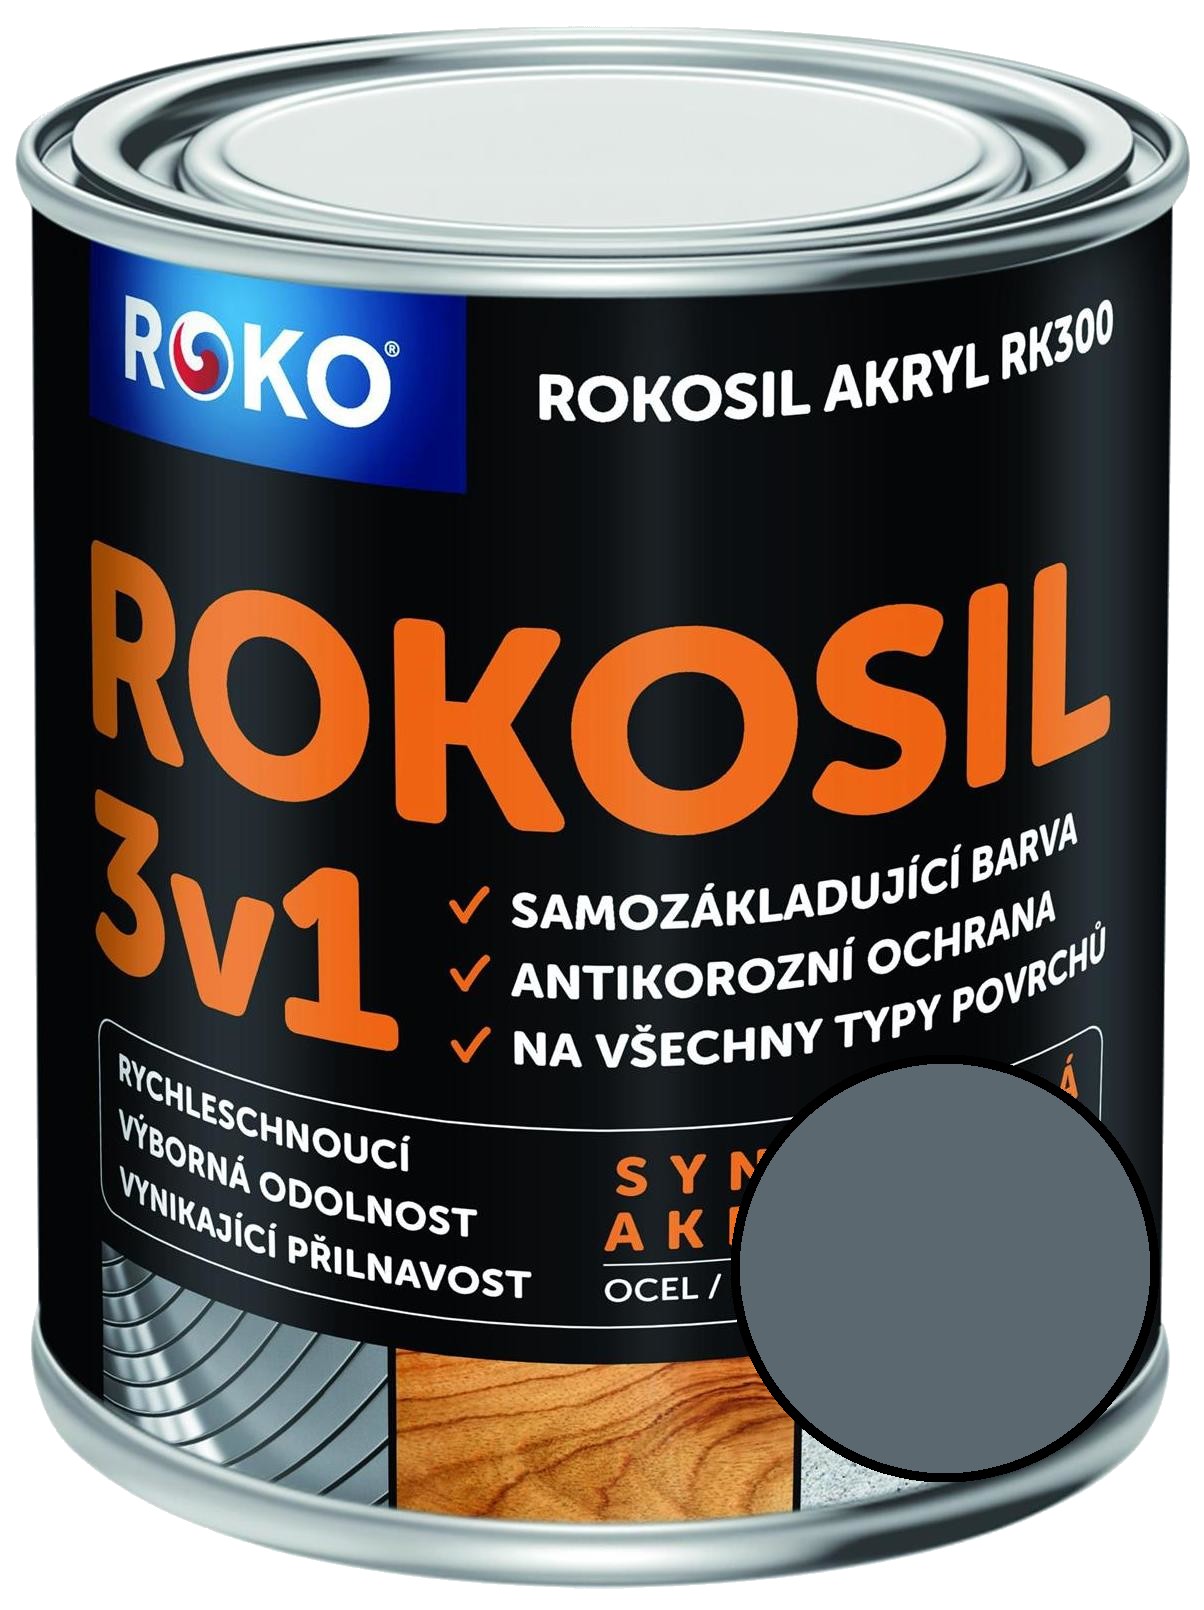 Barva samozákladující Rokosil akryl 3v1 RK 300 šedá stř. 0